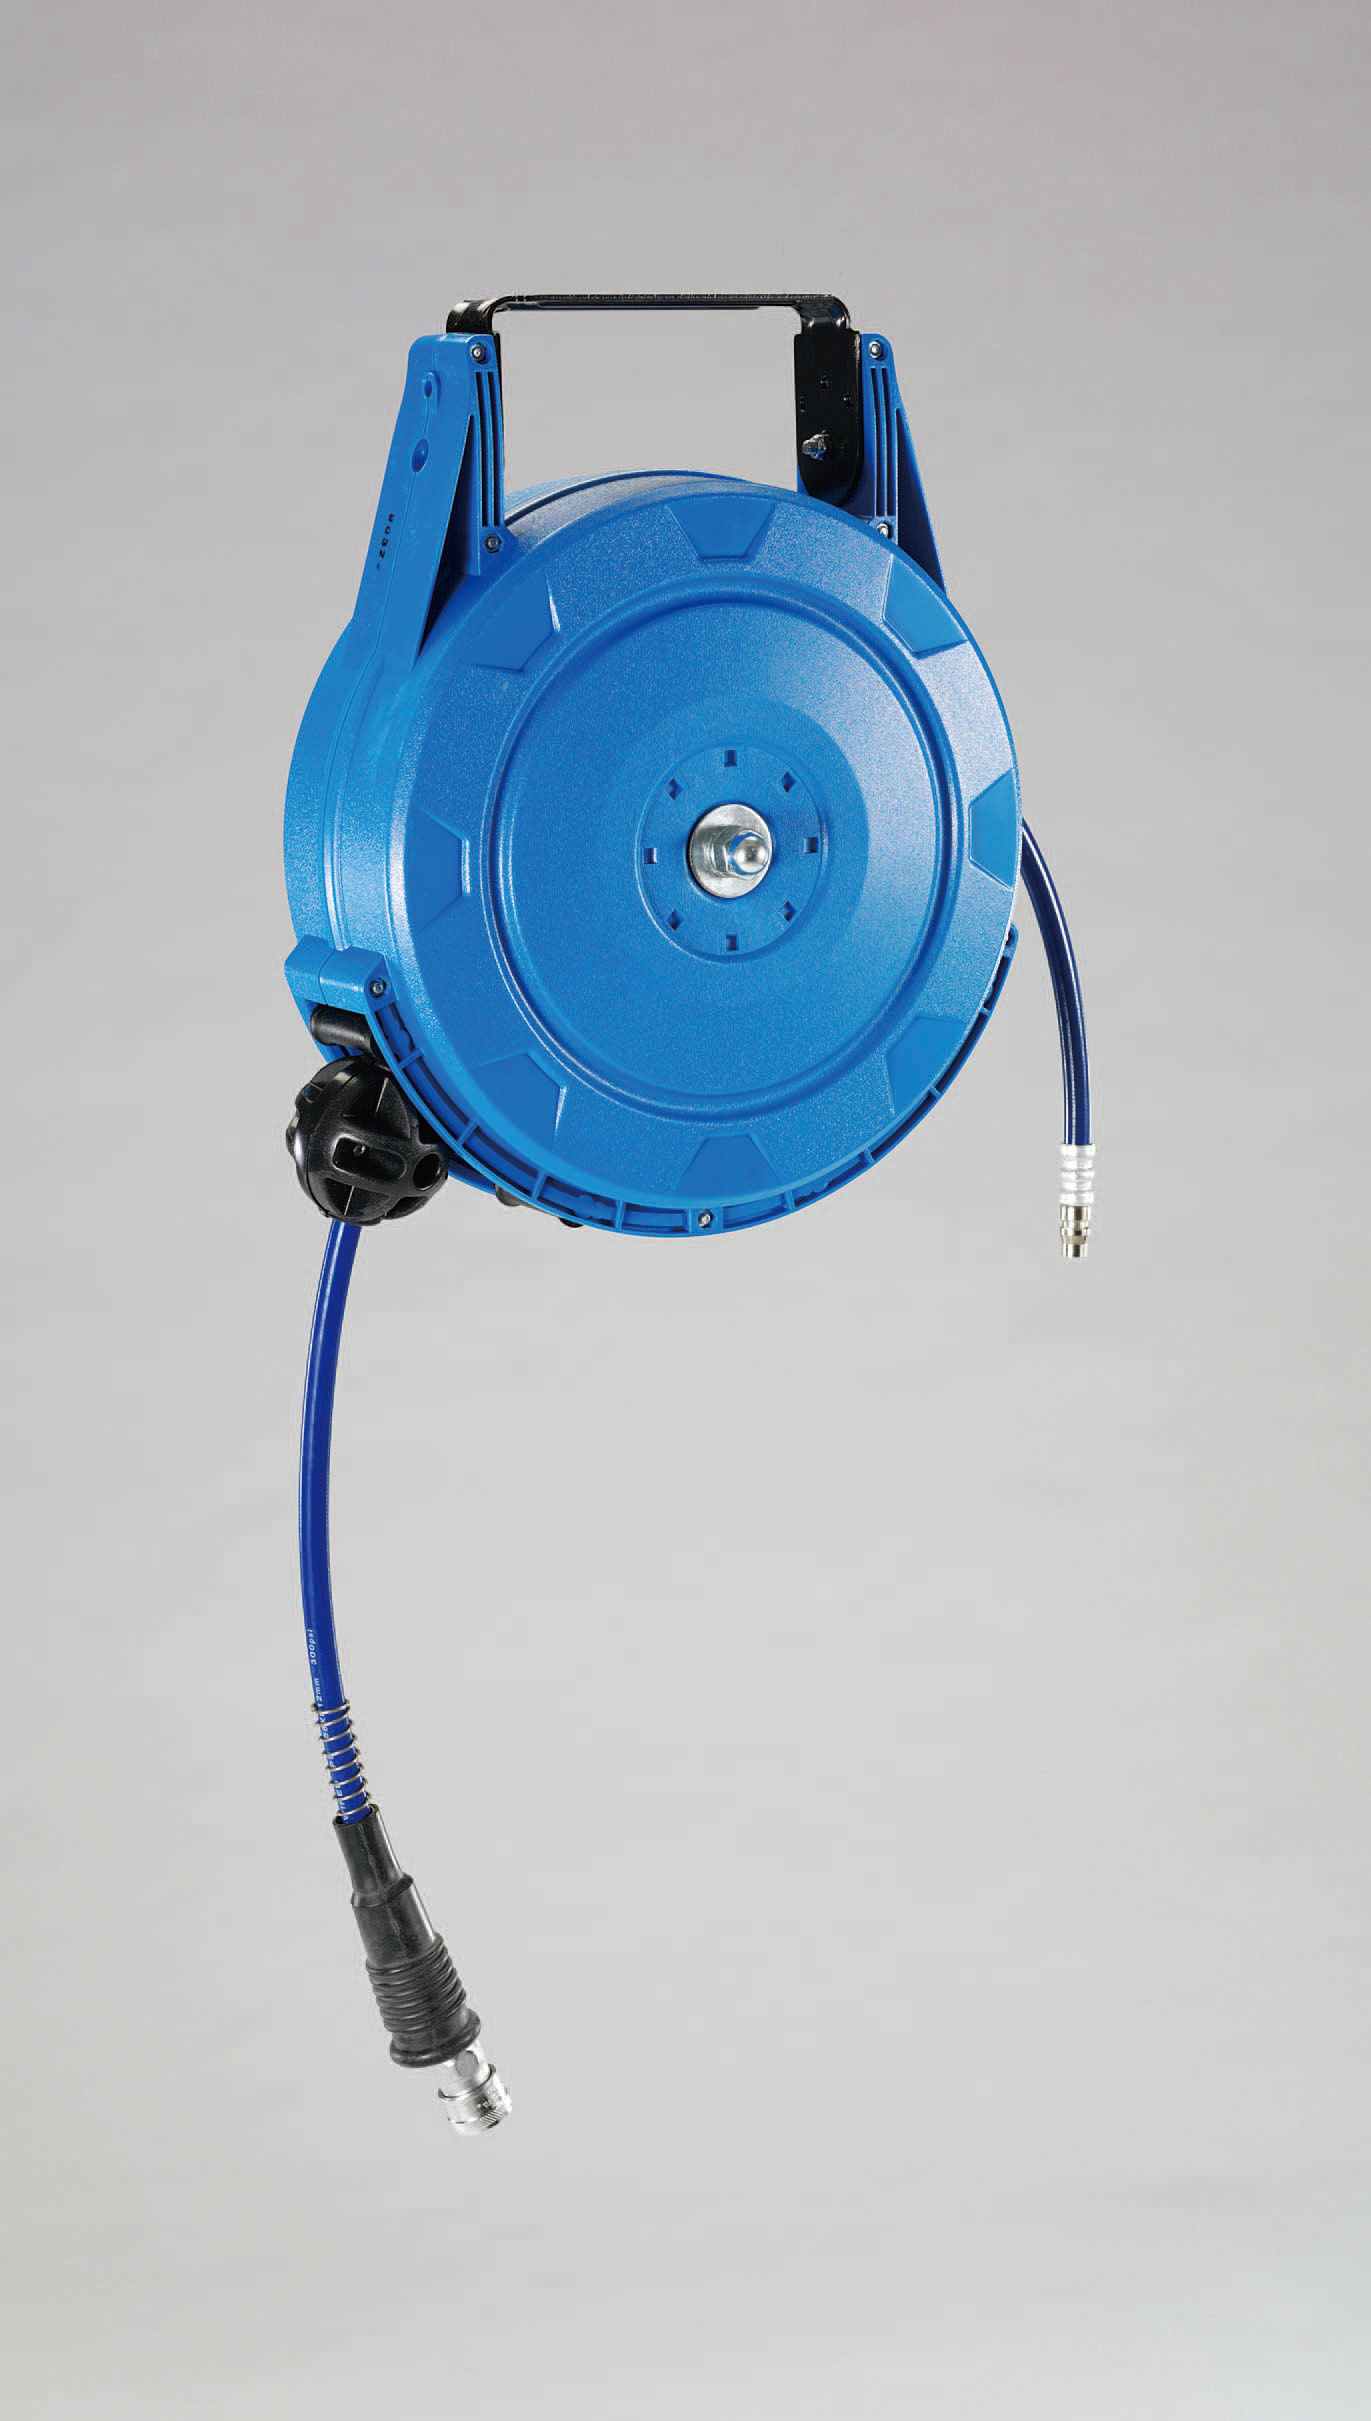 エスコ エスコ 29.0mm/25A散水ホース カップリング付 EA124LV-51 (78-0030-91) その他DIY、業務、産業用品